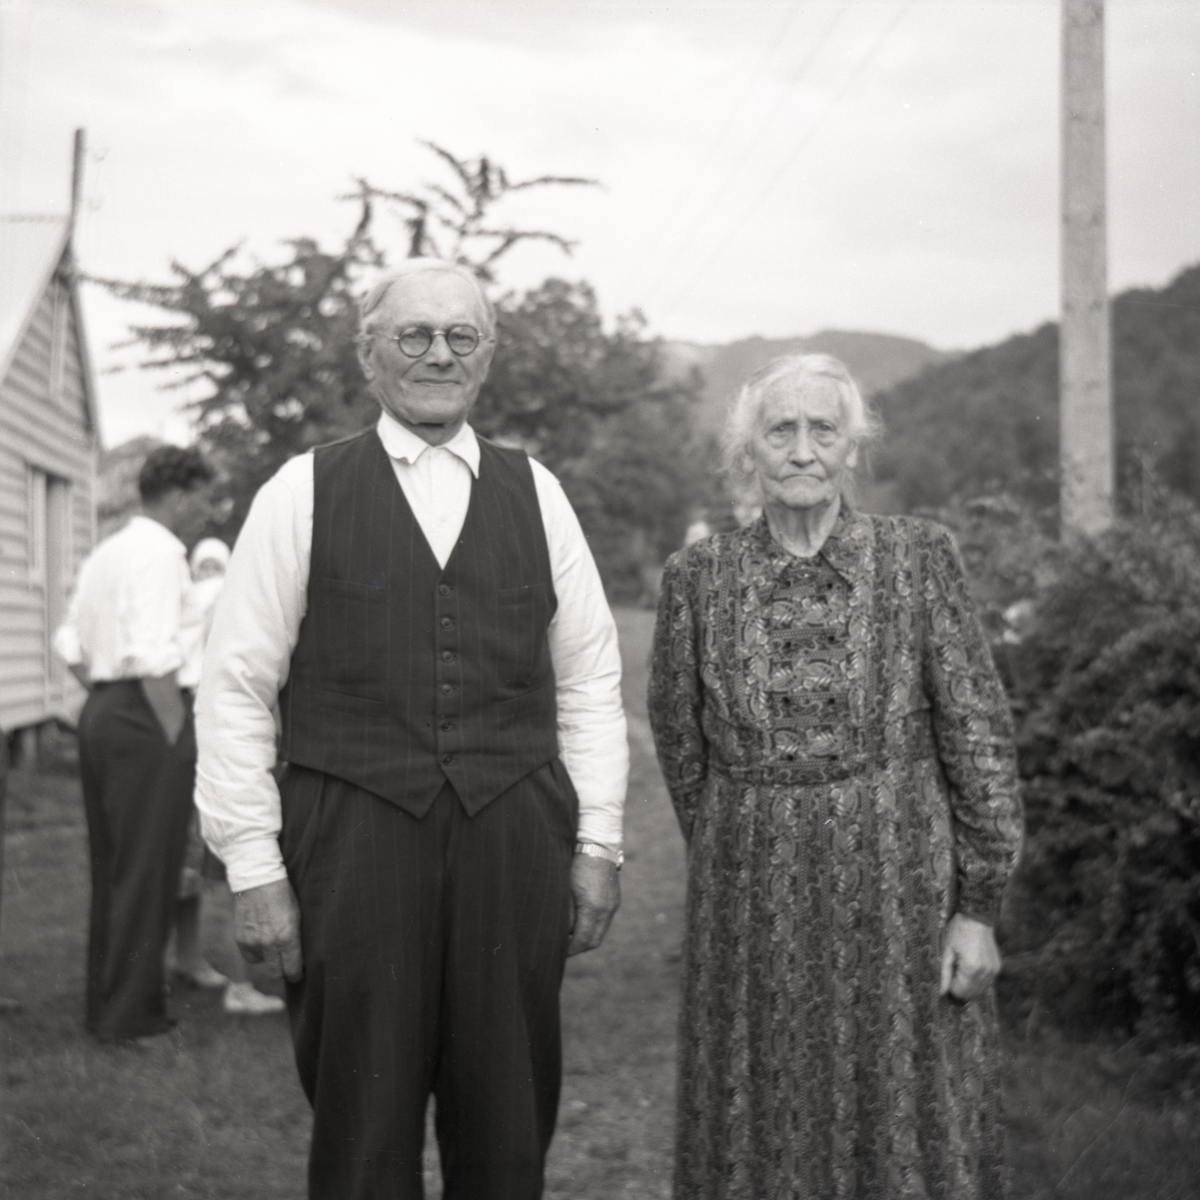 Portrettfotografi av ei eldre kvinne og en mann. Ektepar?